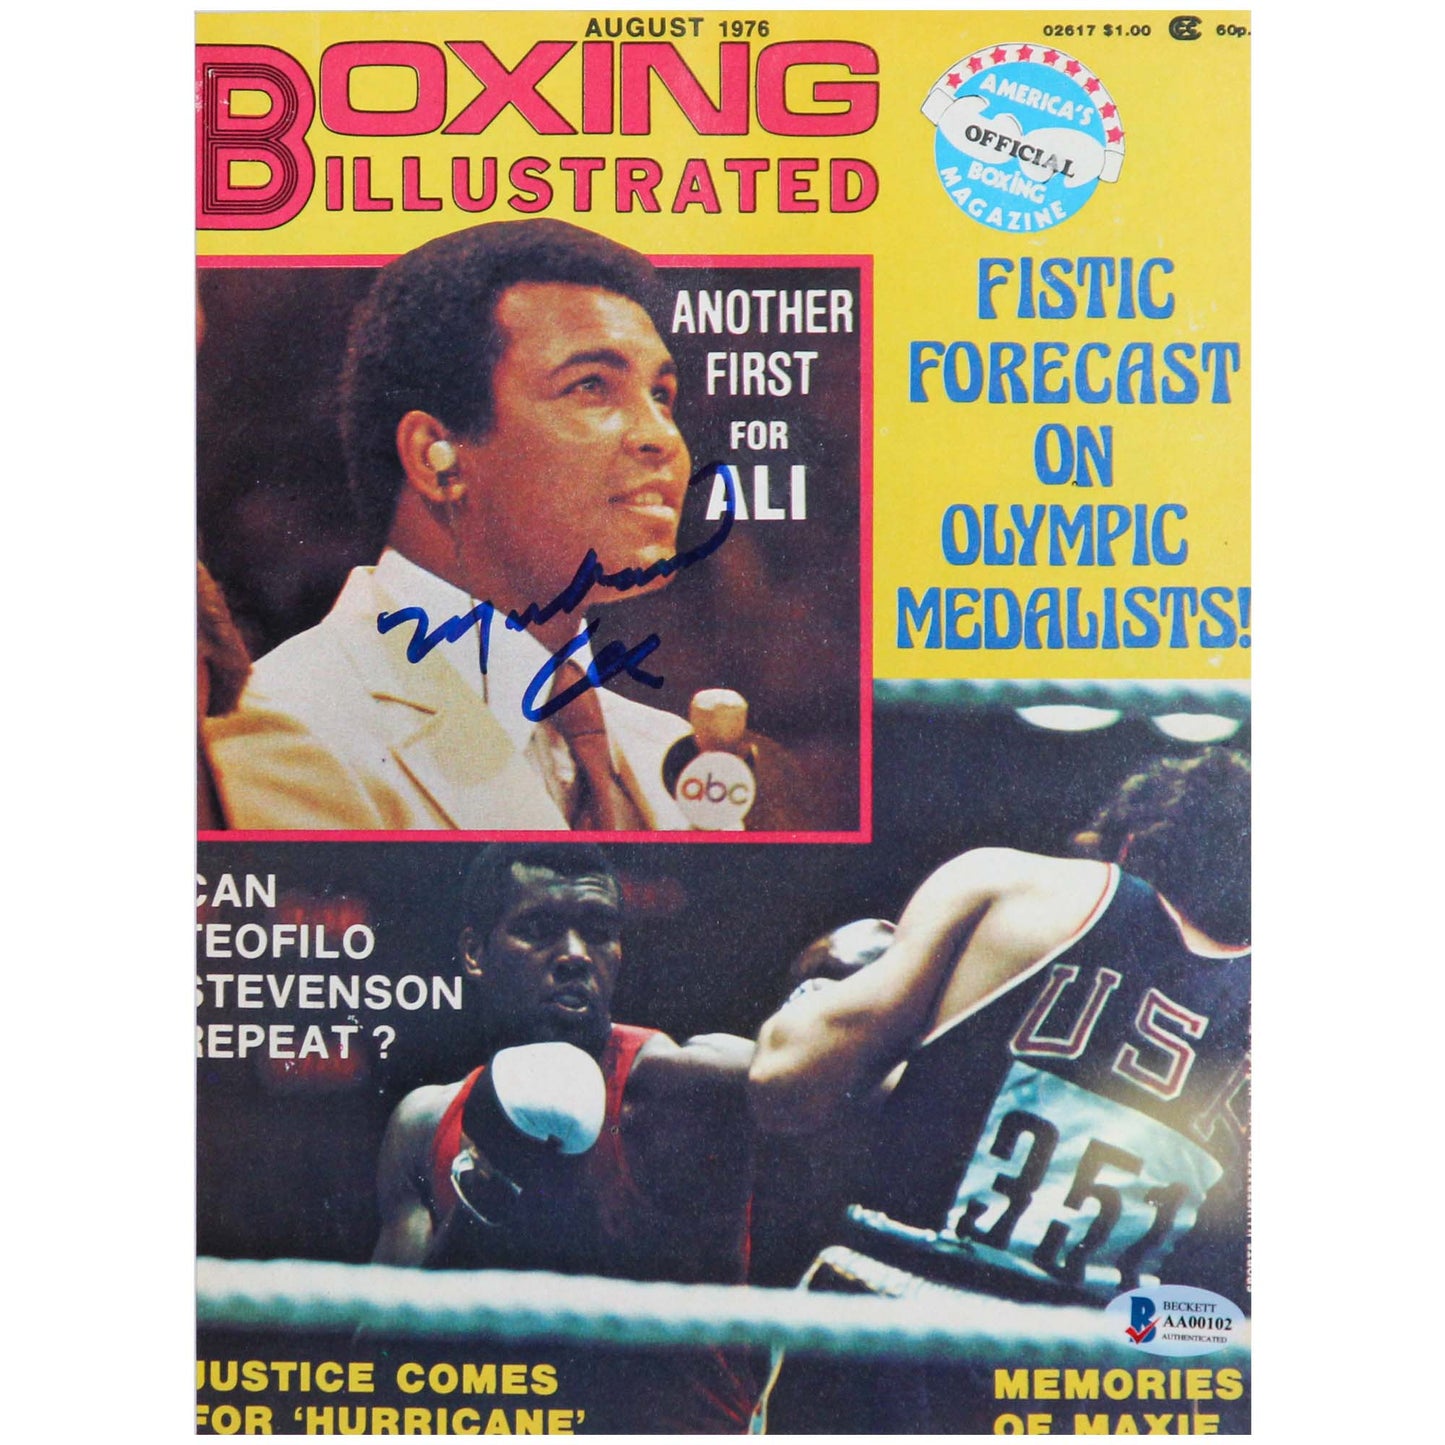 Muhammad Ali Signed Boxing Illustrated Magazine